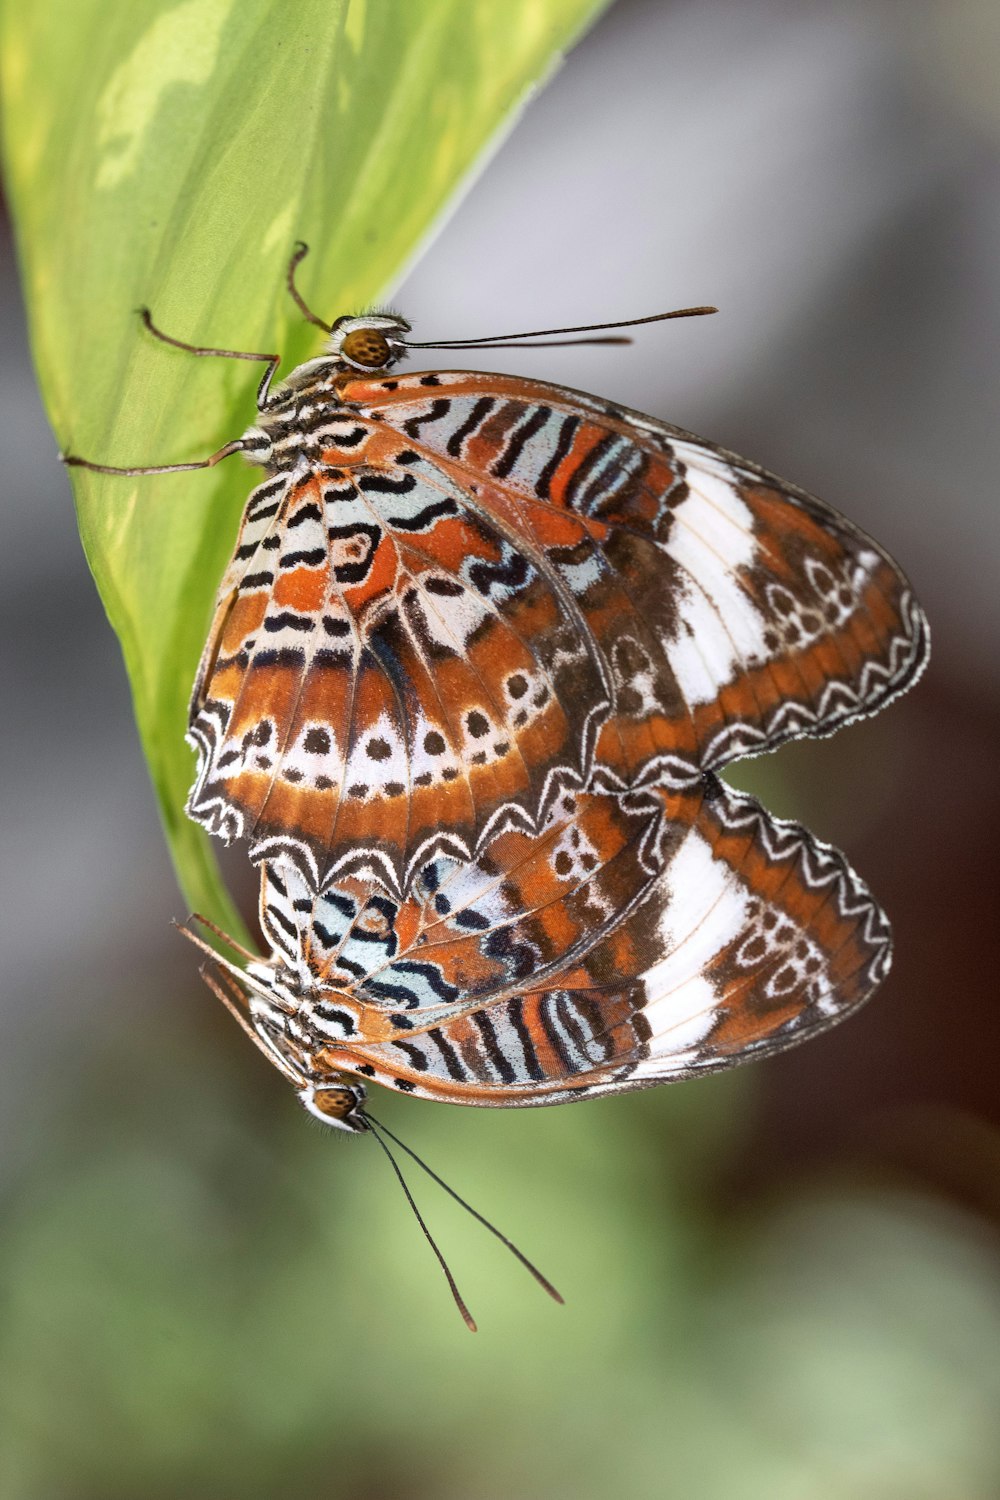 mariposa marrón y blanca posada en hoja verde en fotografía de primer plano durante el día